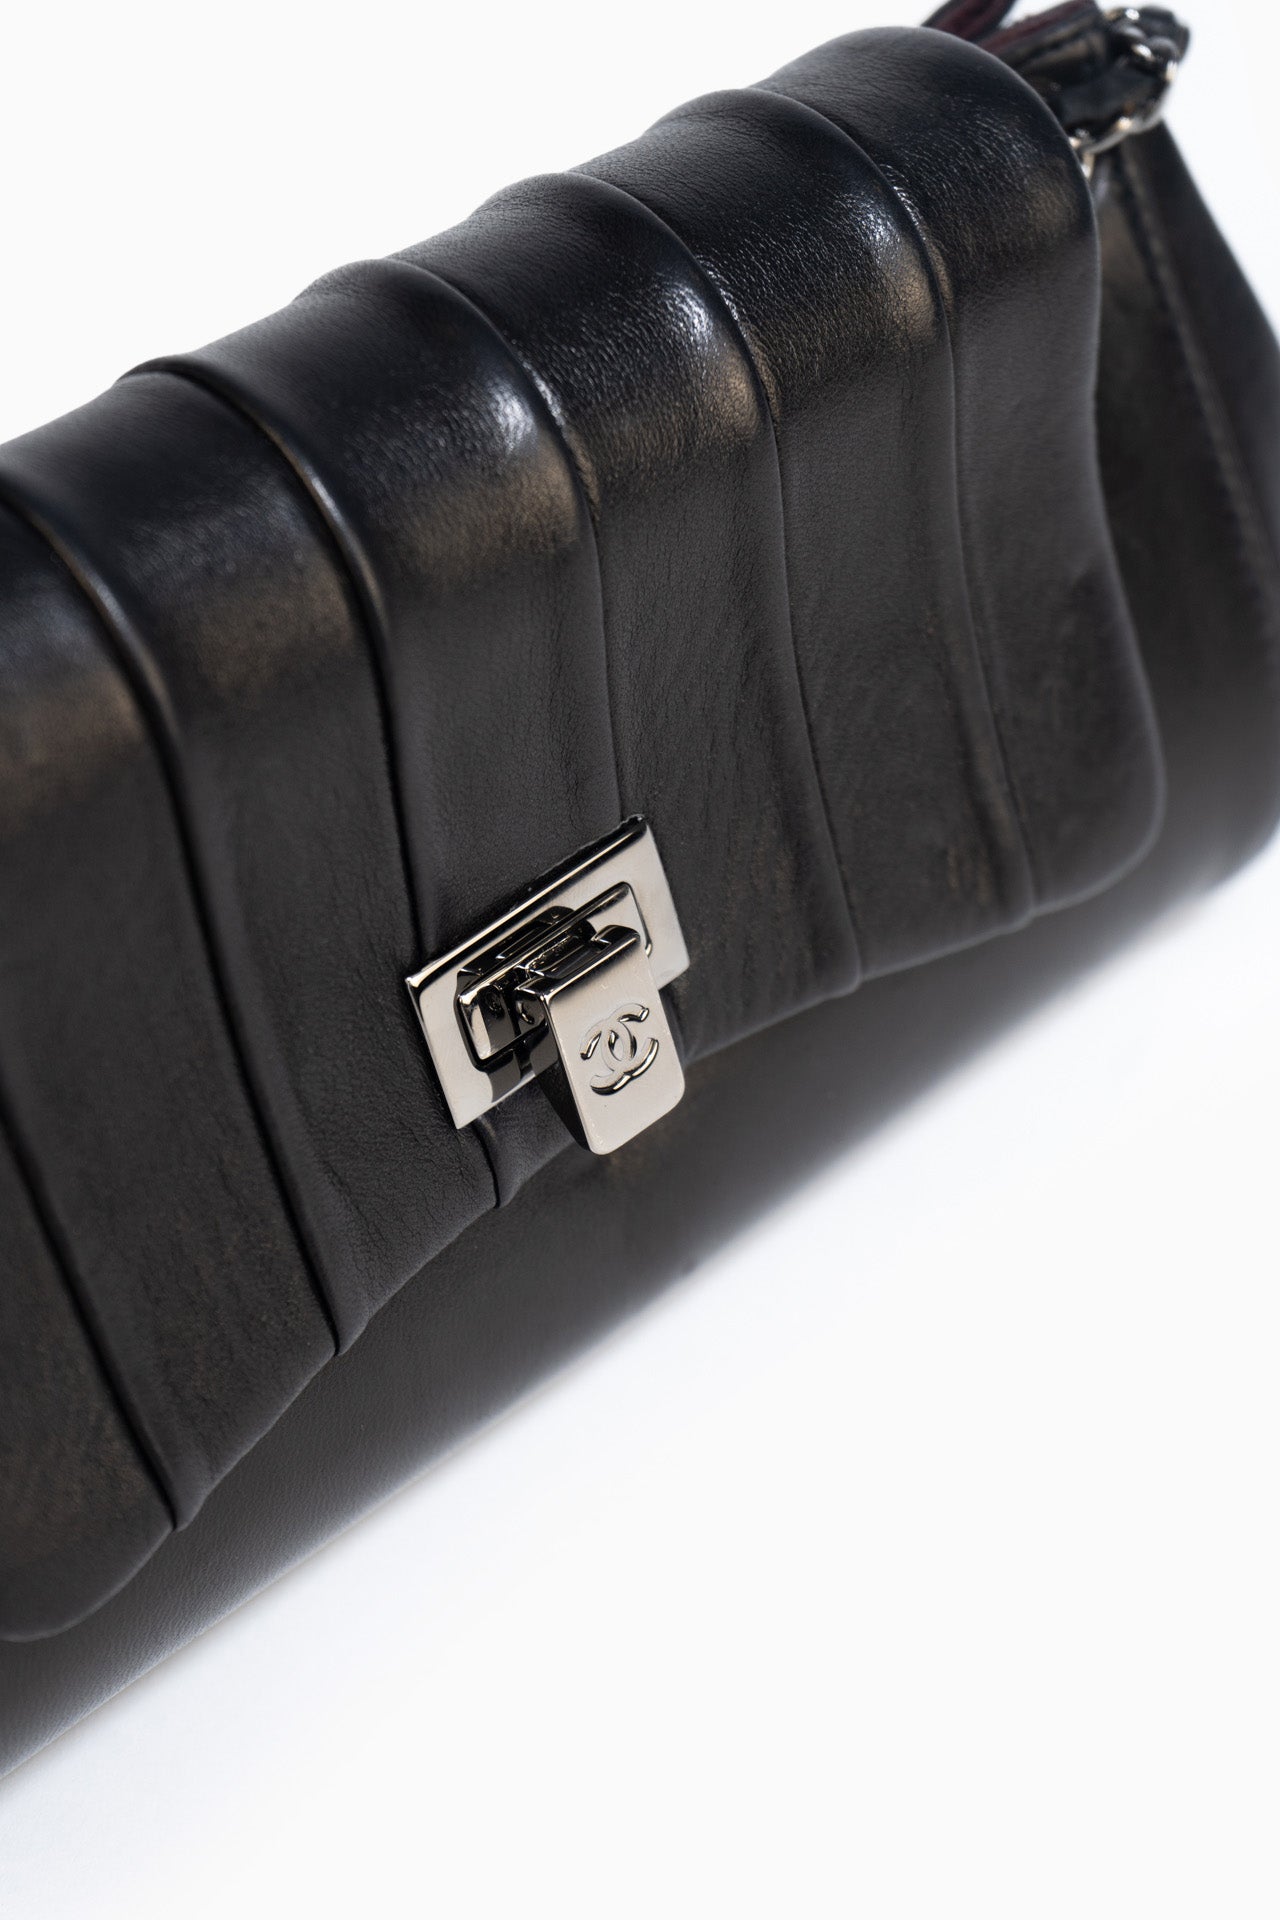 Chanel Vintage Leather Chain Soulder Bag in Black